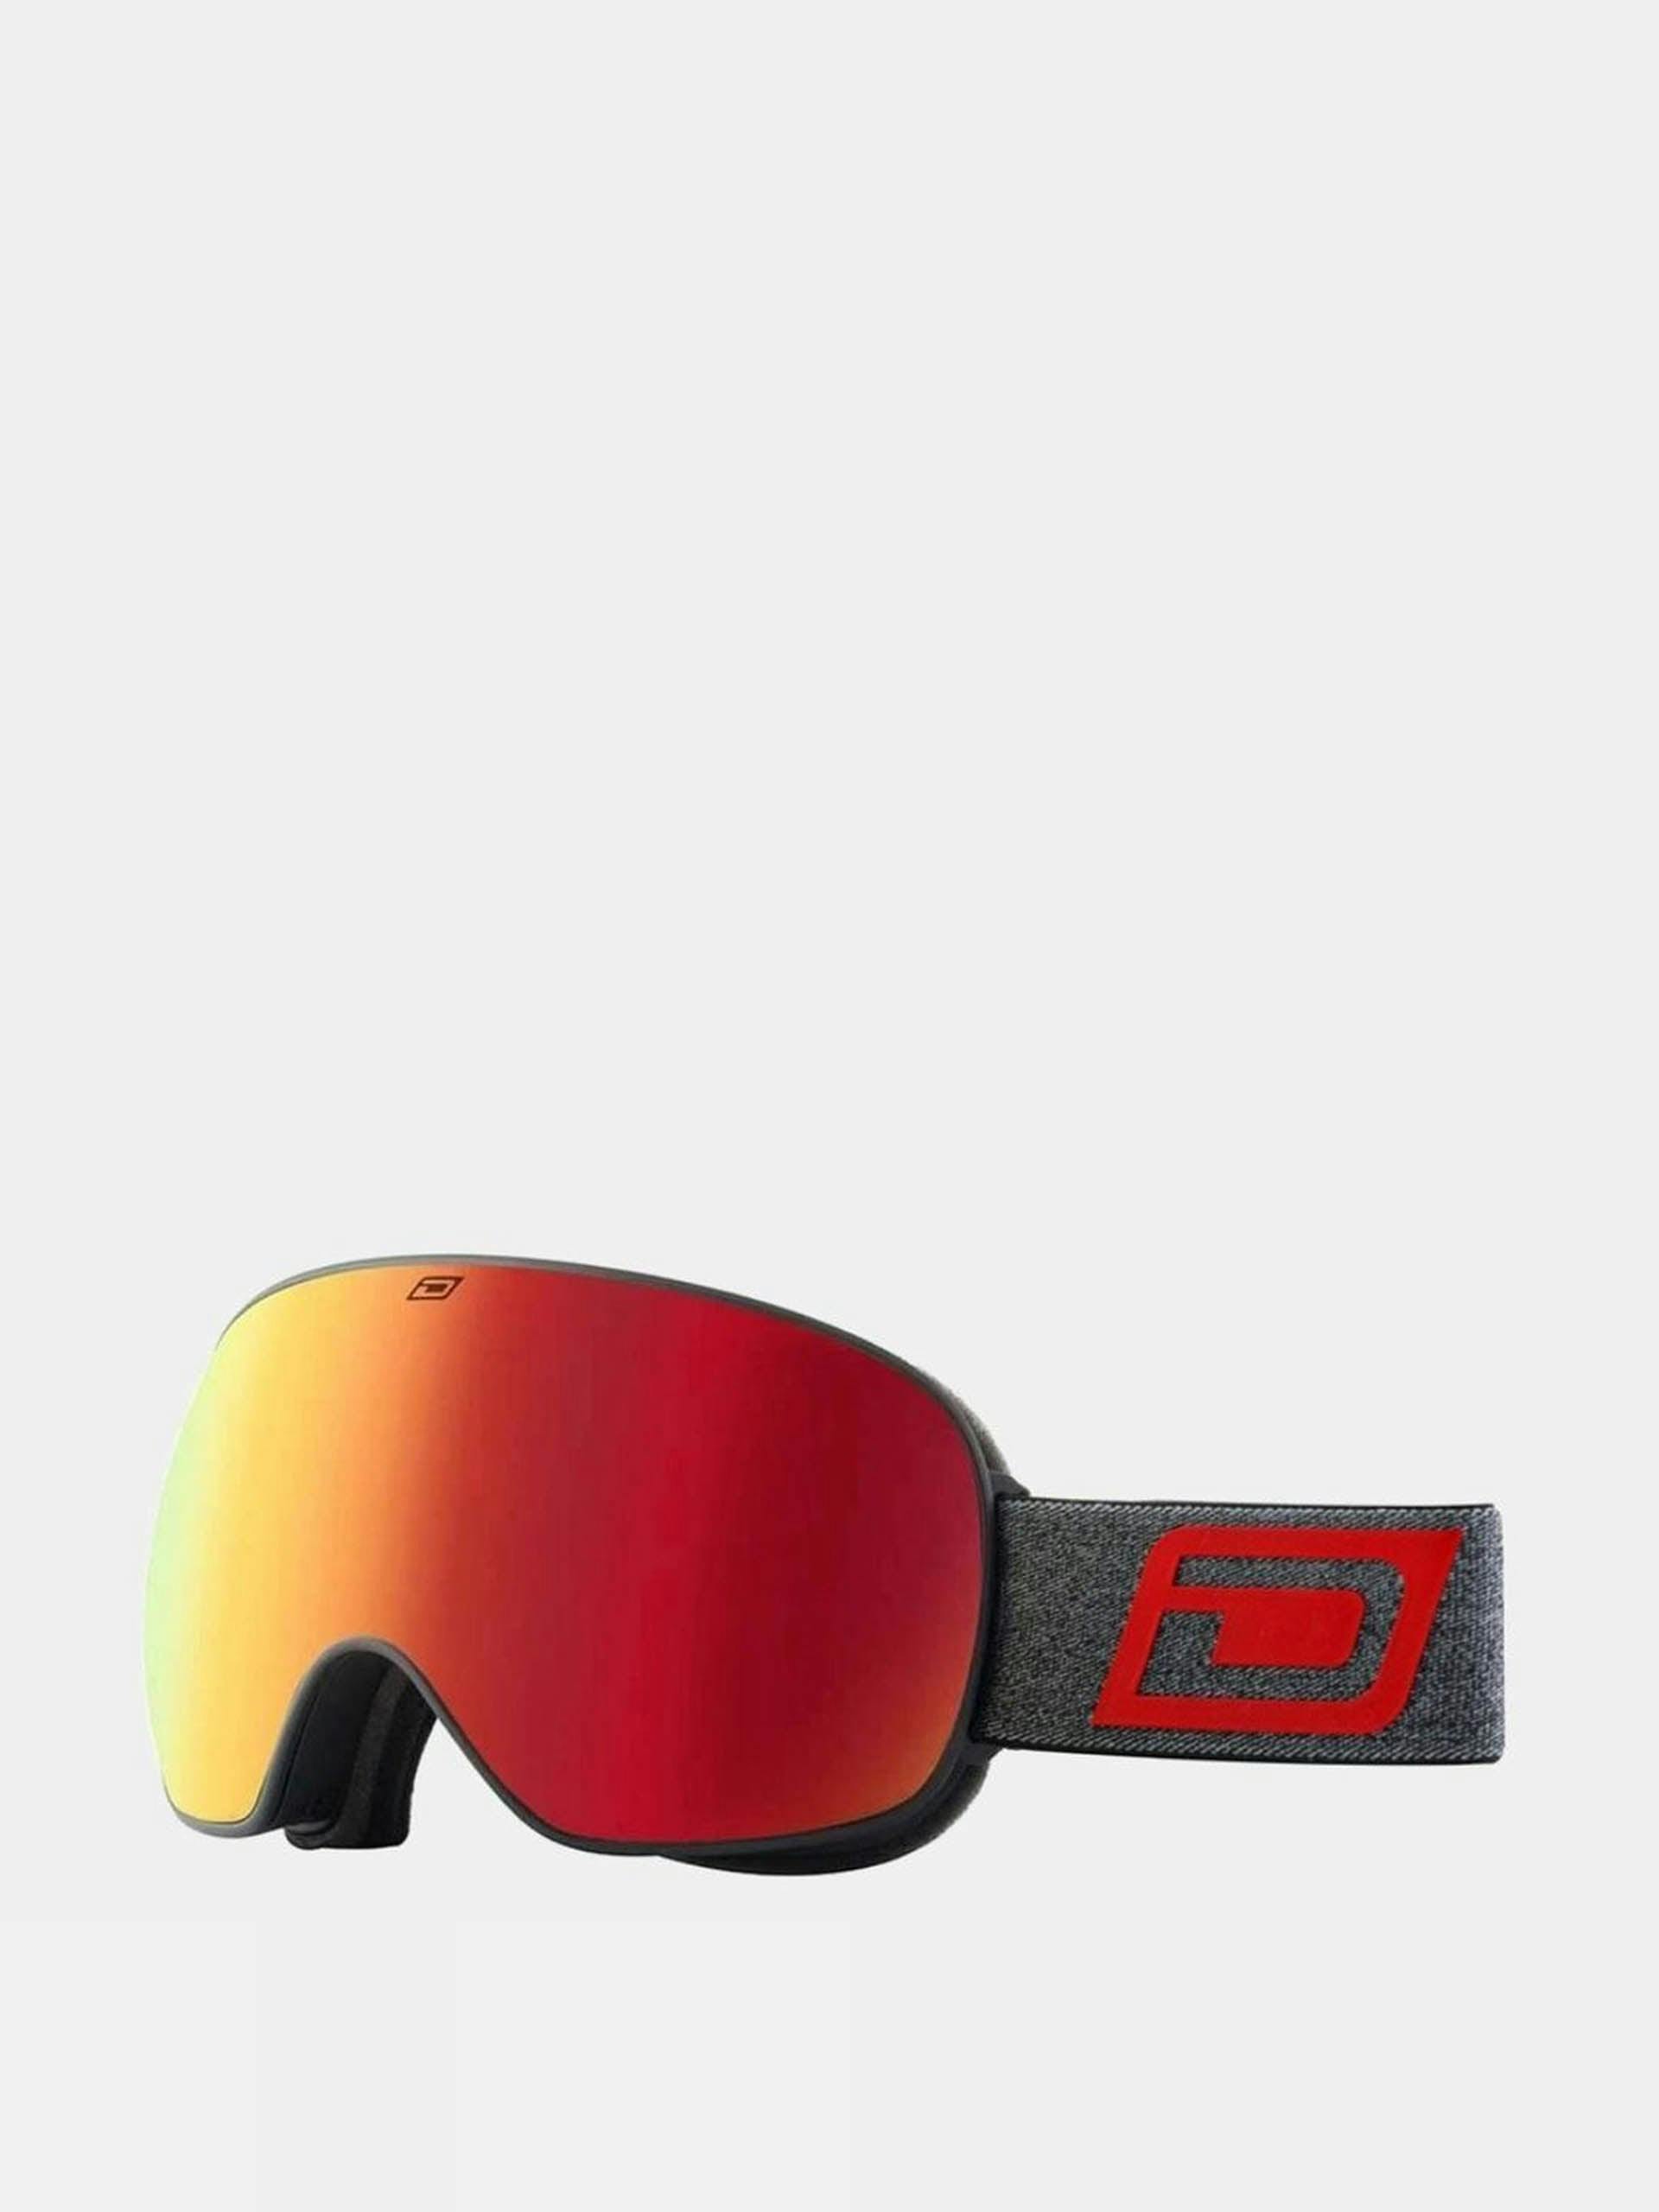 Red mirrored ski goggles